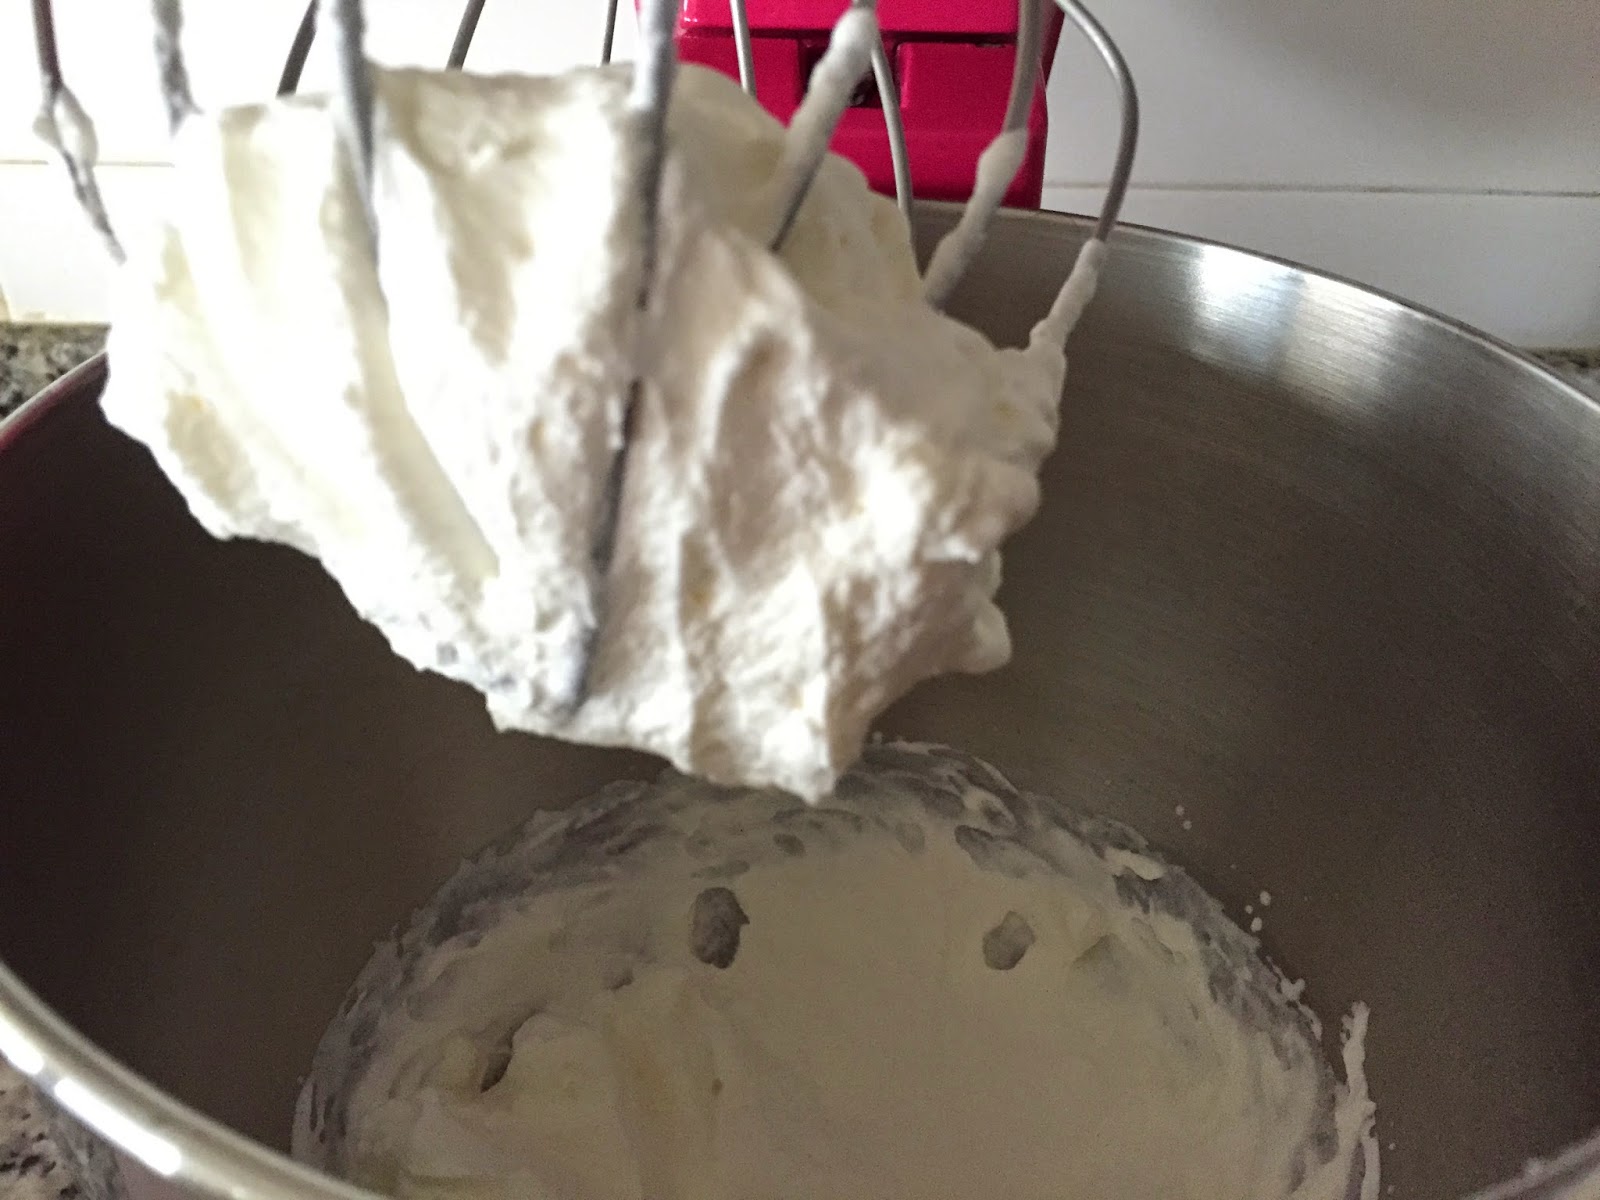 Cheesecake de nocilla blanca y frambuesas, batiendo la nata.